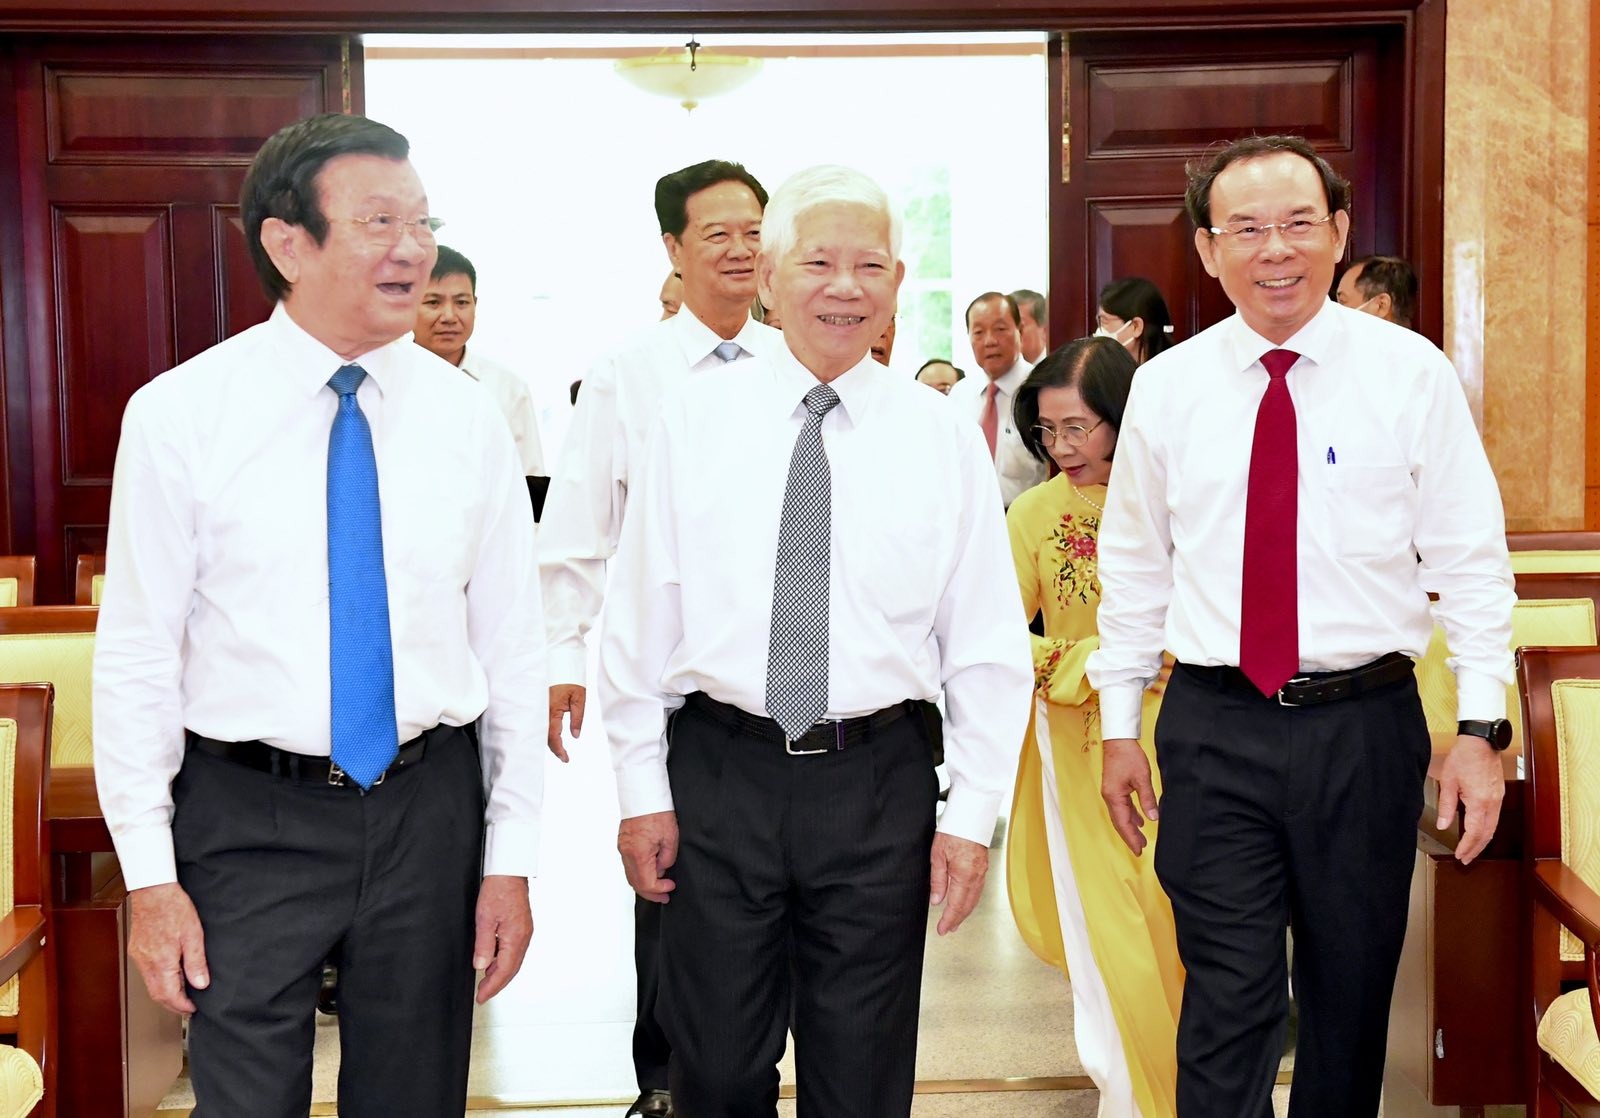 Nguyên Chủ tịch nước Nguyễn Minh Triết và nguyên Chủ tịch nước Trương Tấn Sang đến dự buổi họp mặt (Ảnh: VIỆT DŨNG).